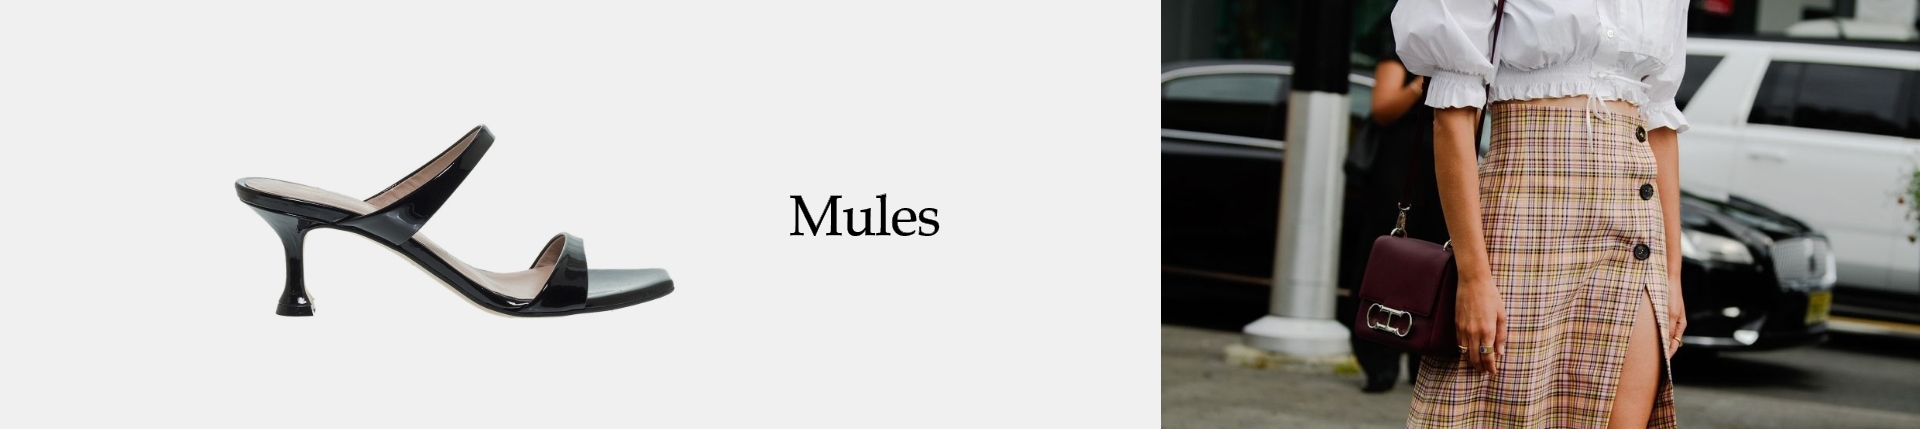 MULES